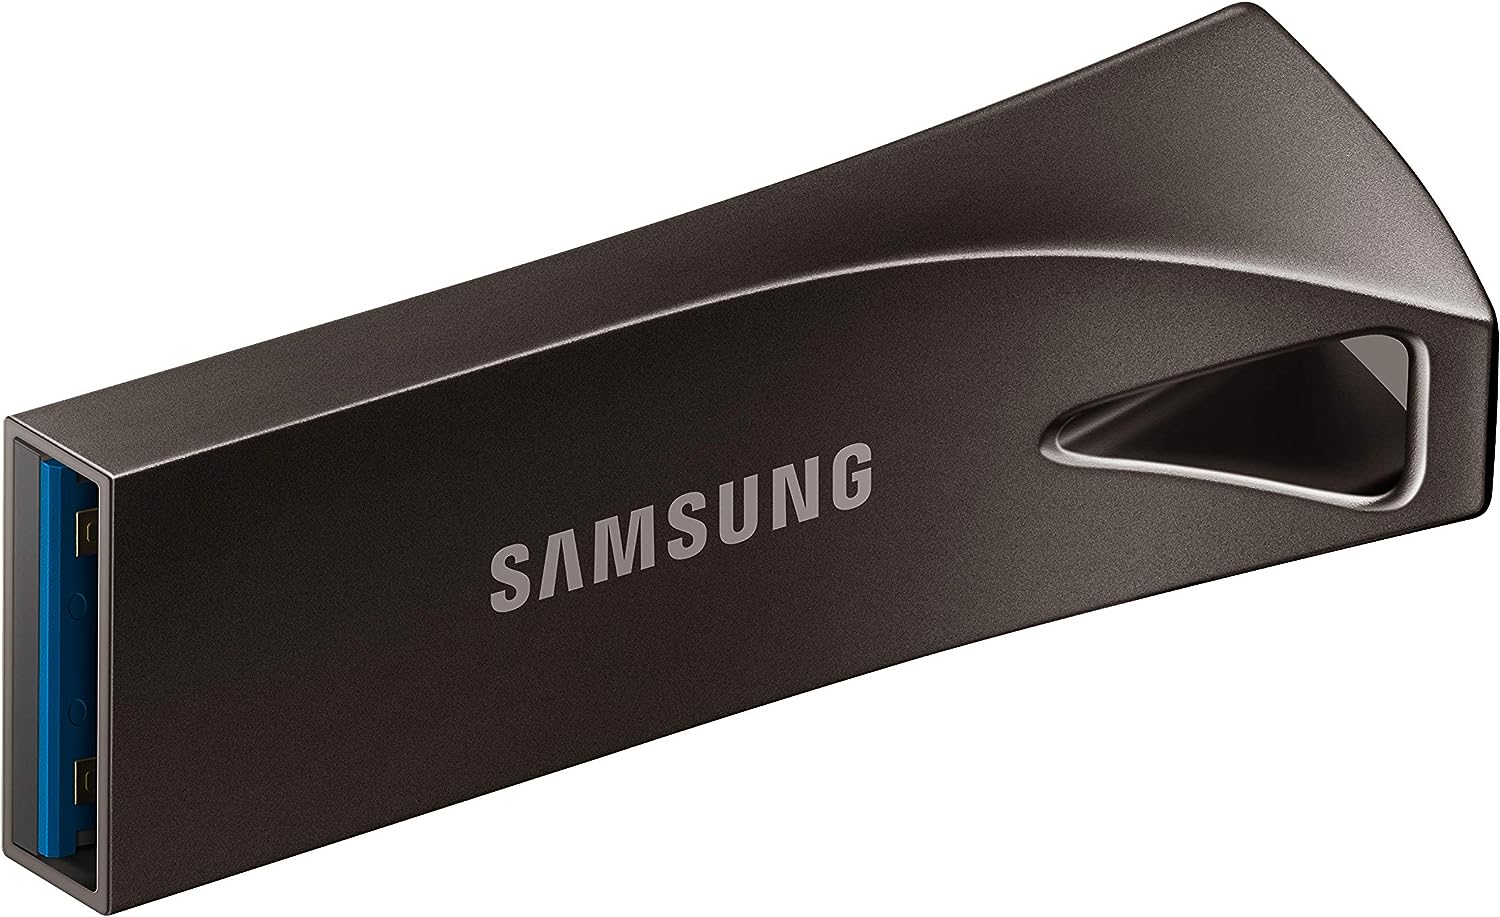 $19.99 Samsung BAR Plus 256GB - 400MB/s USB 3.1 Flash Drive Titan Gray (MUF-256BE4/AM) $19.99